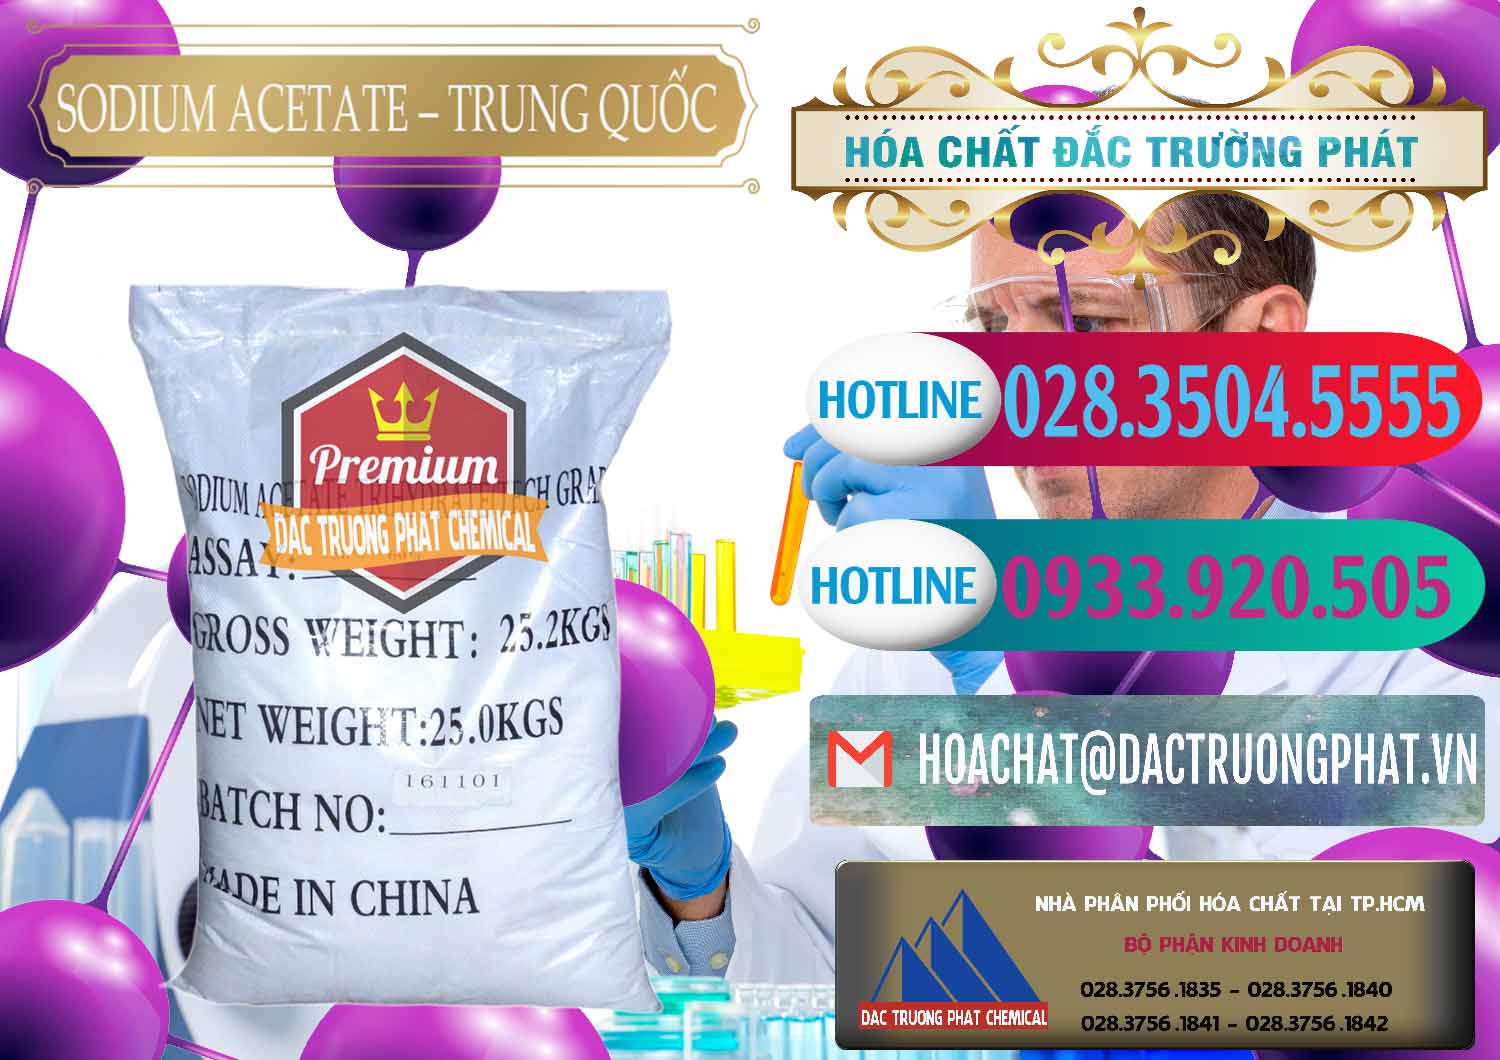 Cty chuyên phân phối - bán Sodium Acetate - Natri Acetate Trung Quốc China - 0134 - Nơi phân phối & kinh doanh hóa chất tại TP.HCM - truongphat.vn